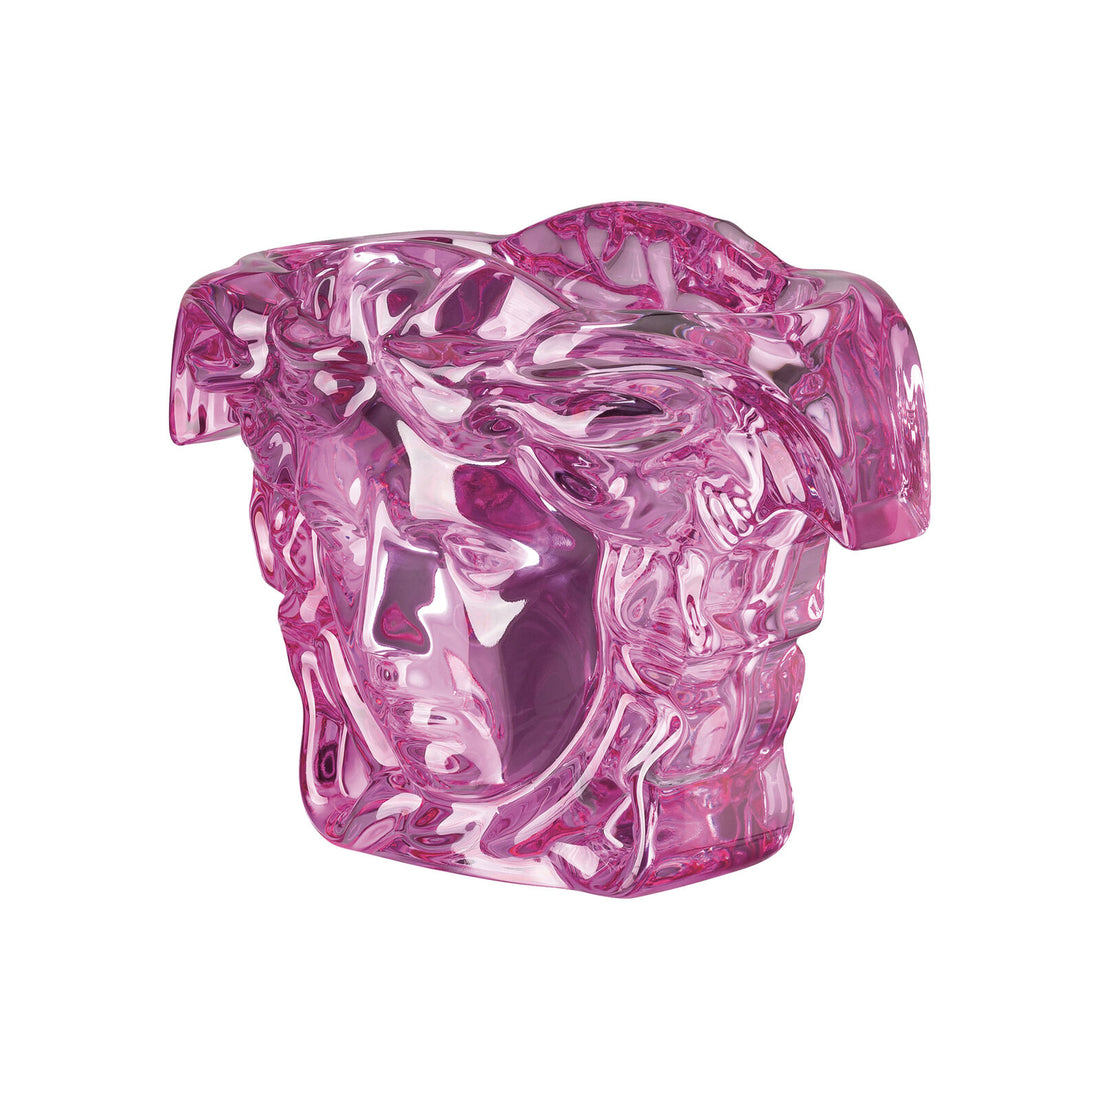 Medusa Grande Crystal  Pink Vase  19 CM, 7 1/2 Inch